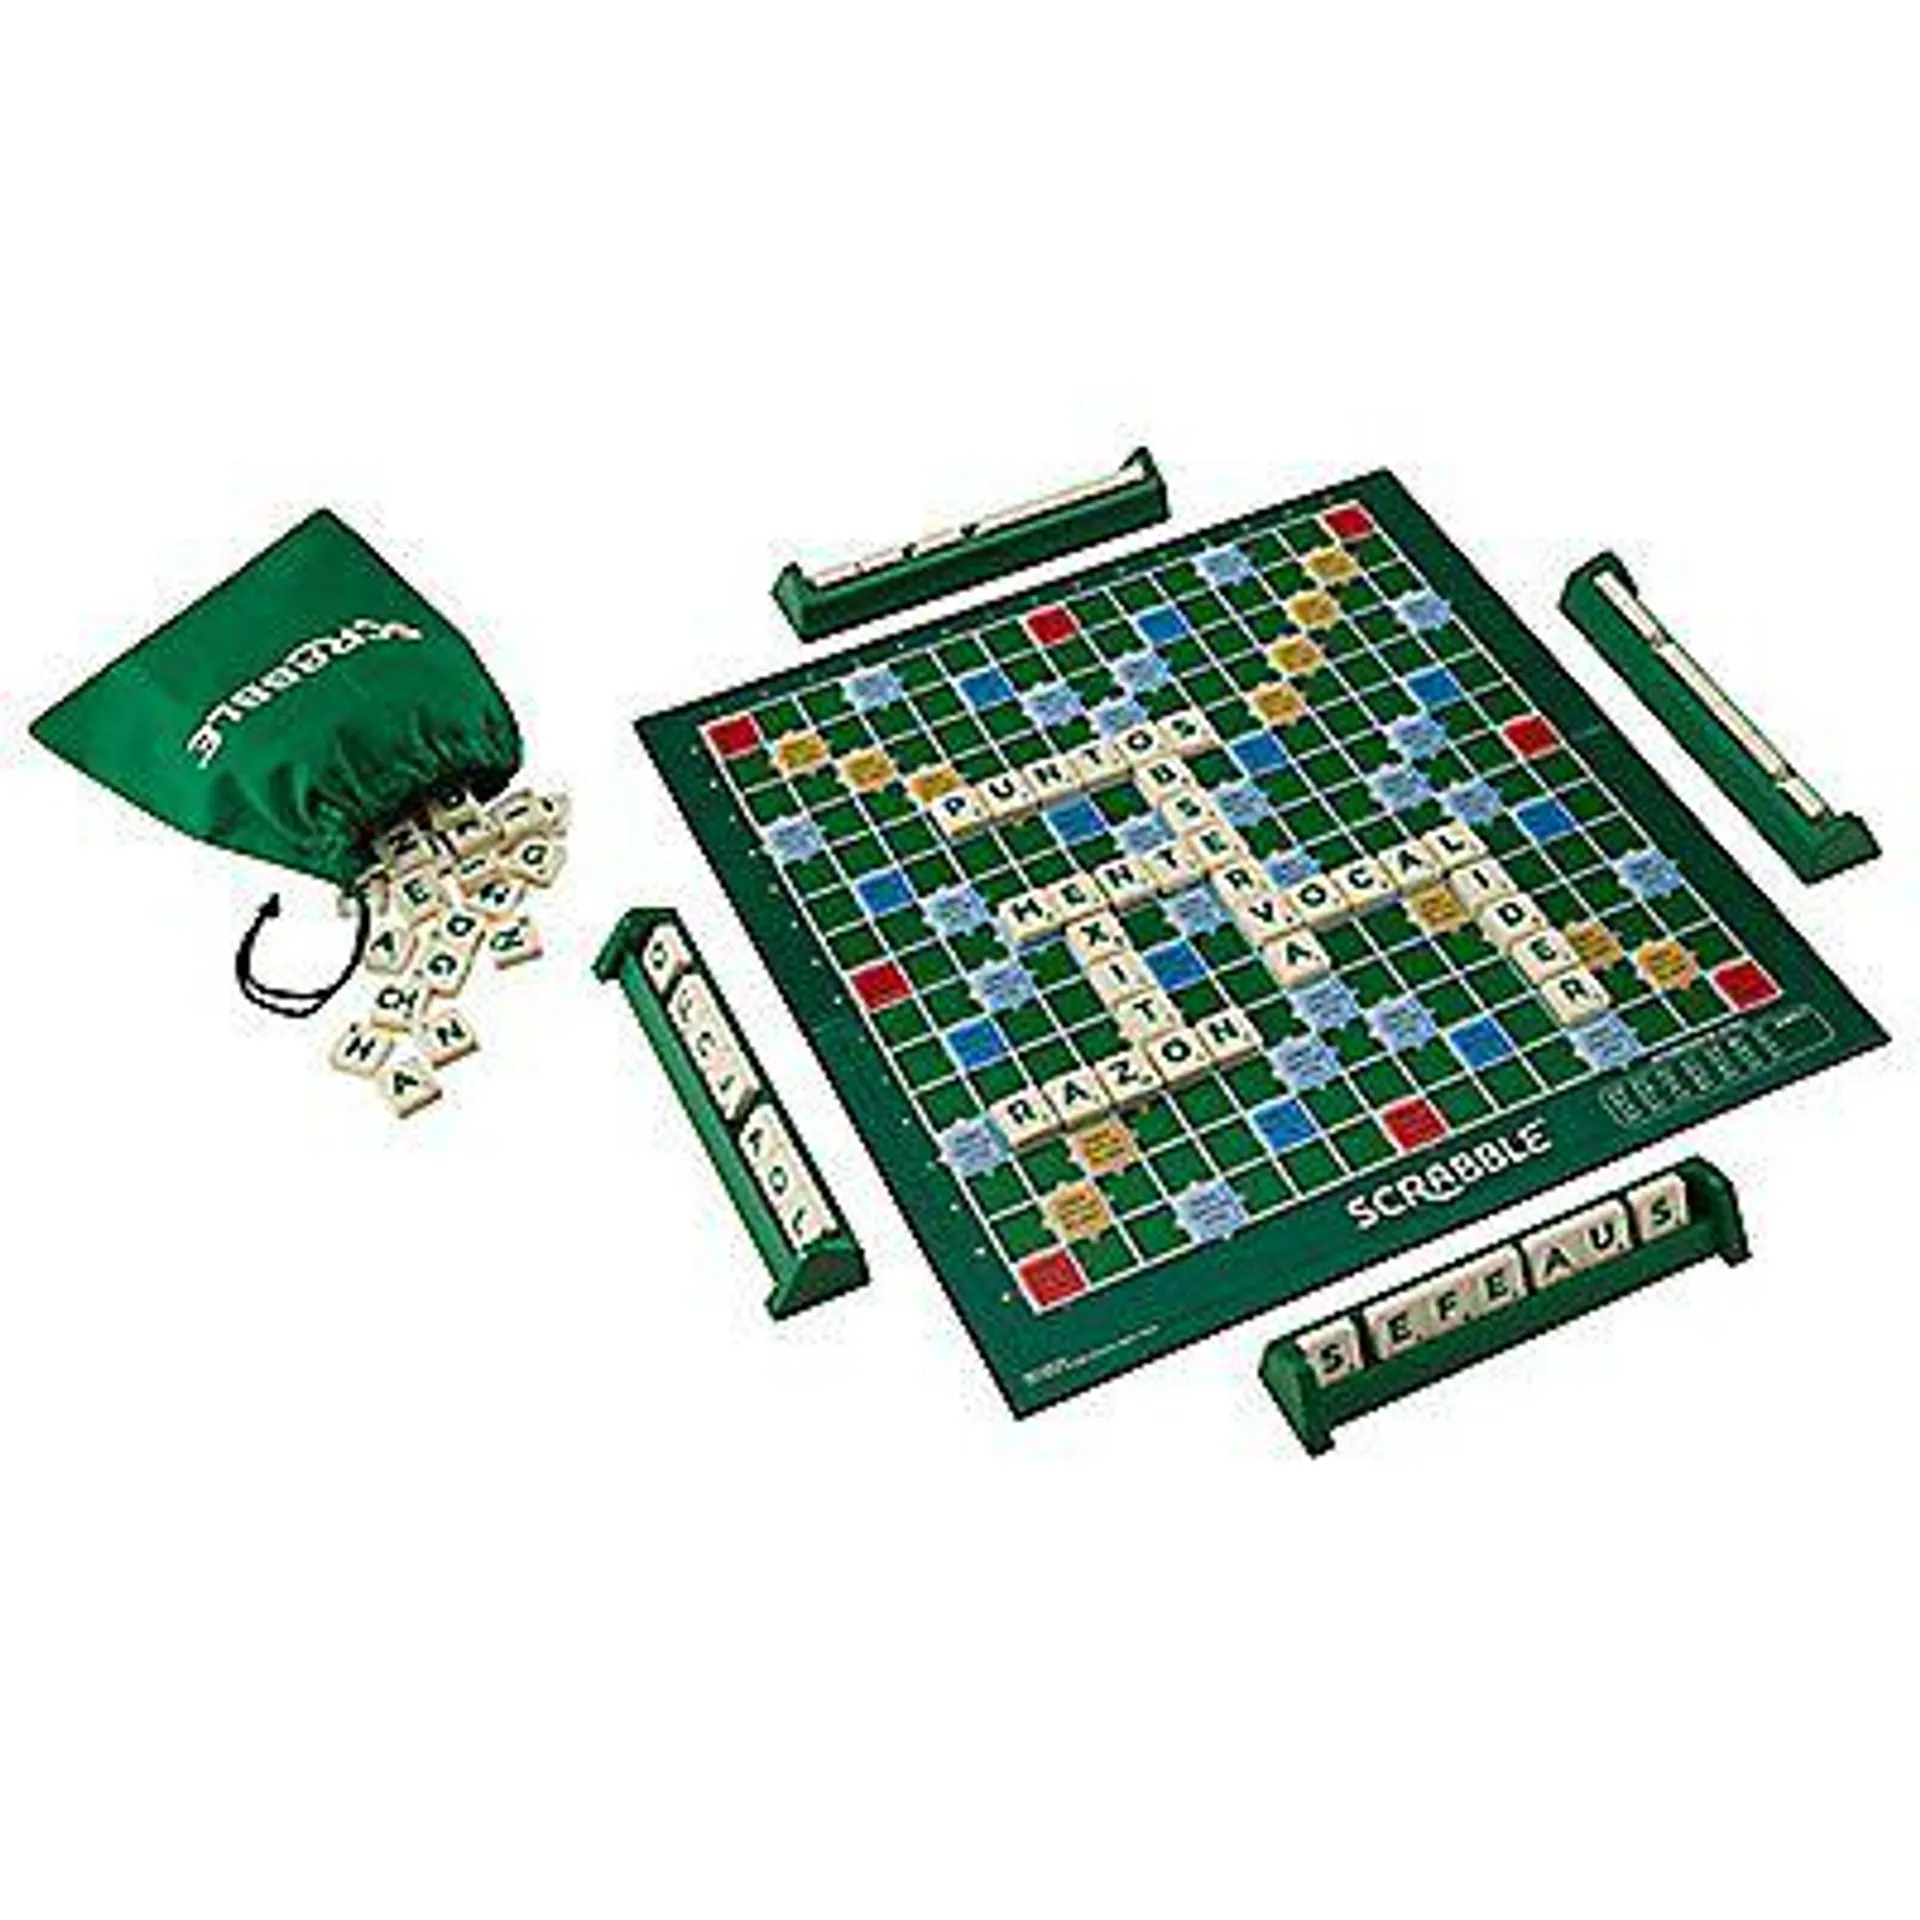 Juego de Mesa Mattel Games Scrabble Original